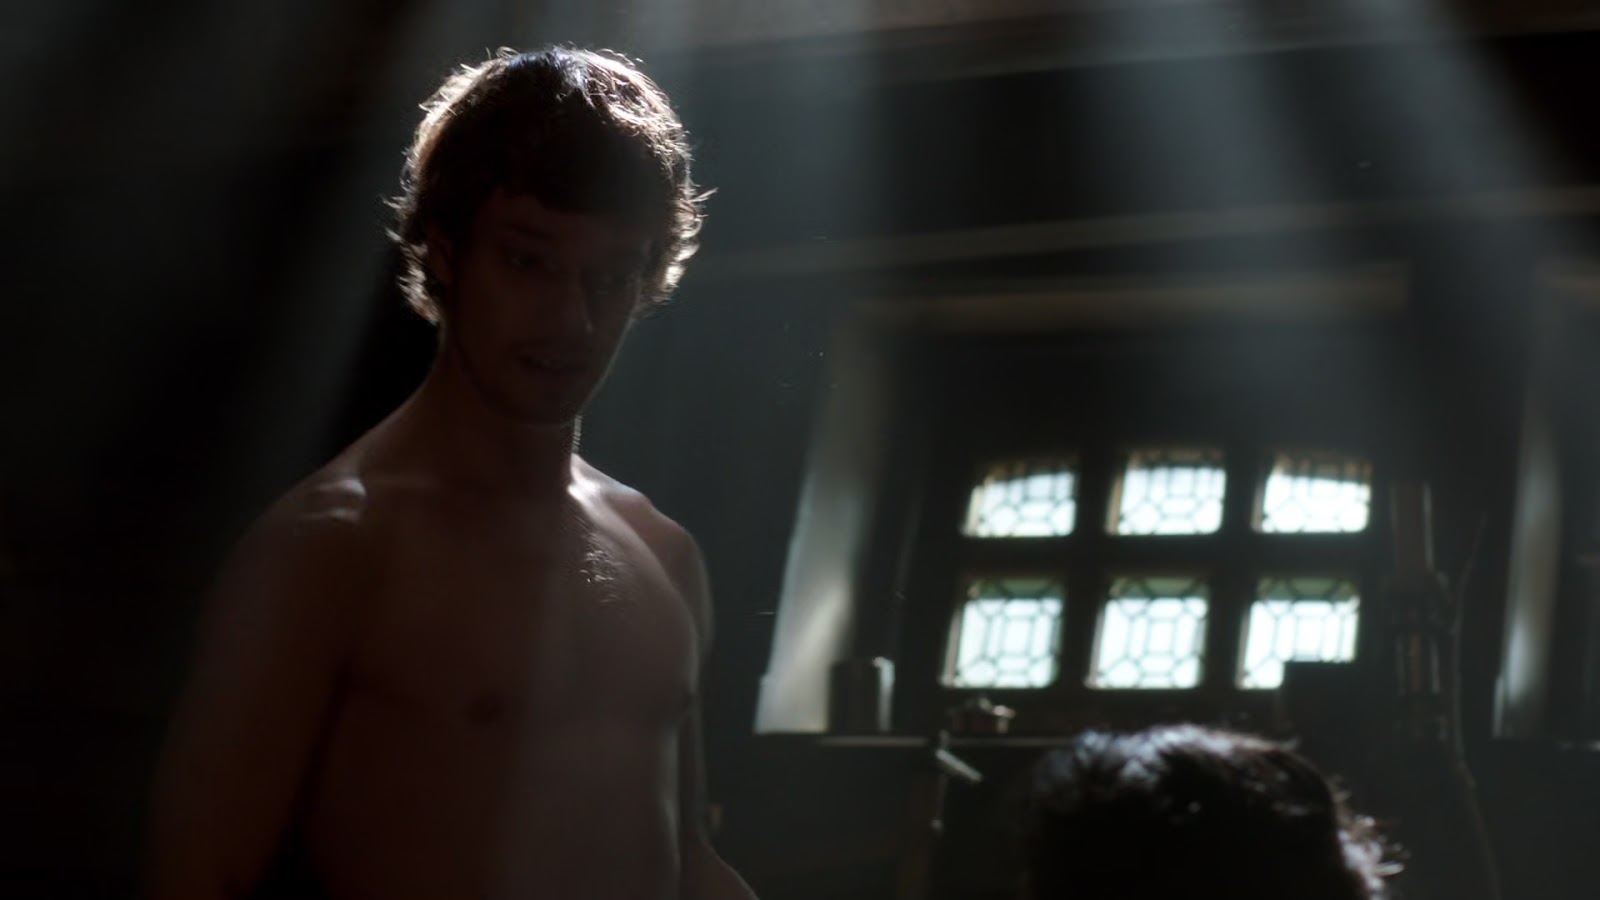 Alfie Allen nude in Game Of Thrones 2-02 "The Night Lands" .